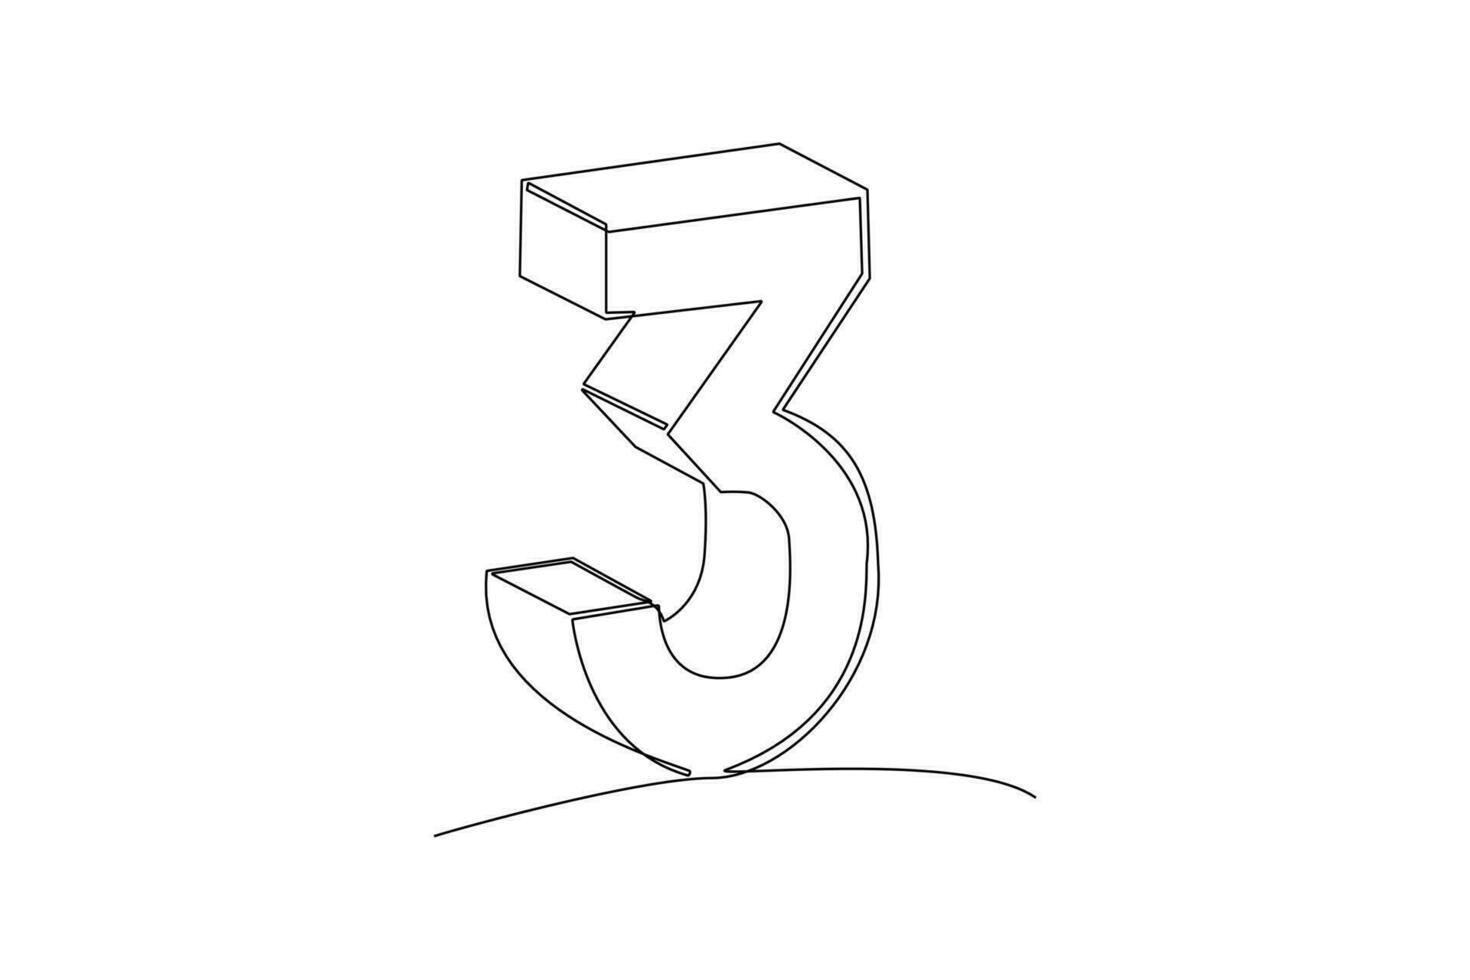 uno continuo linea disegno di mattoni con numeri. numerale cubo concetto. scarabocchio vettore illustrazione nel semplice lineare stile.